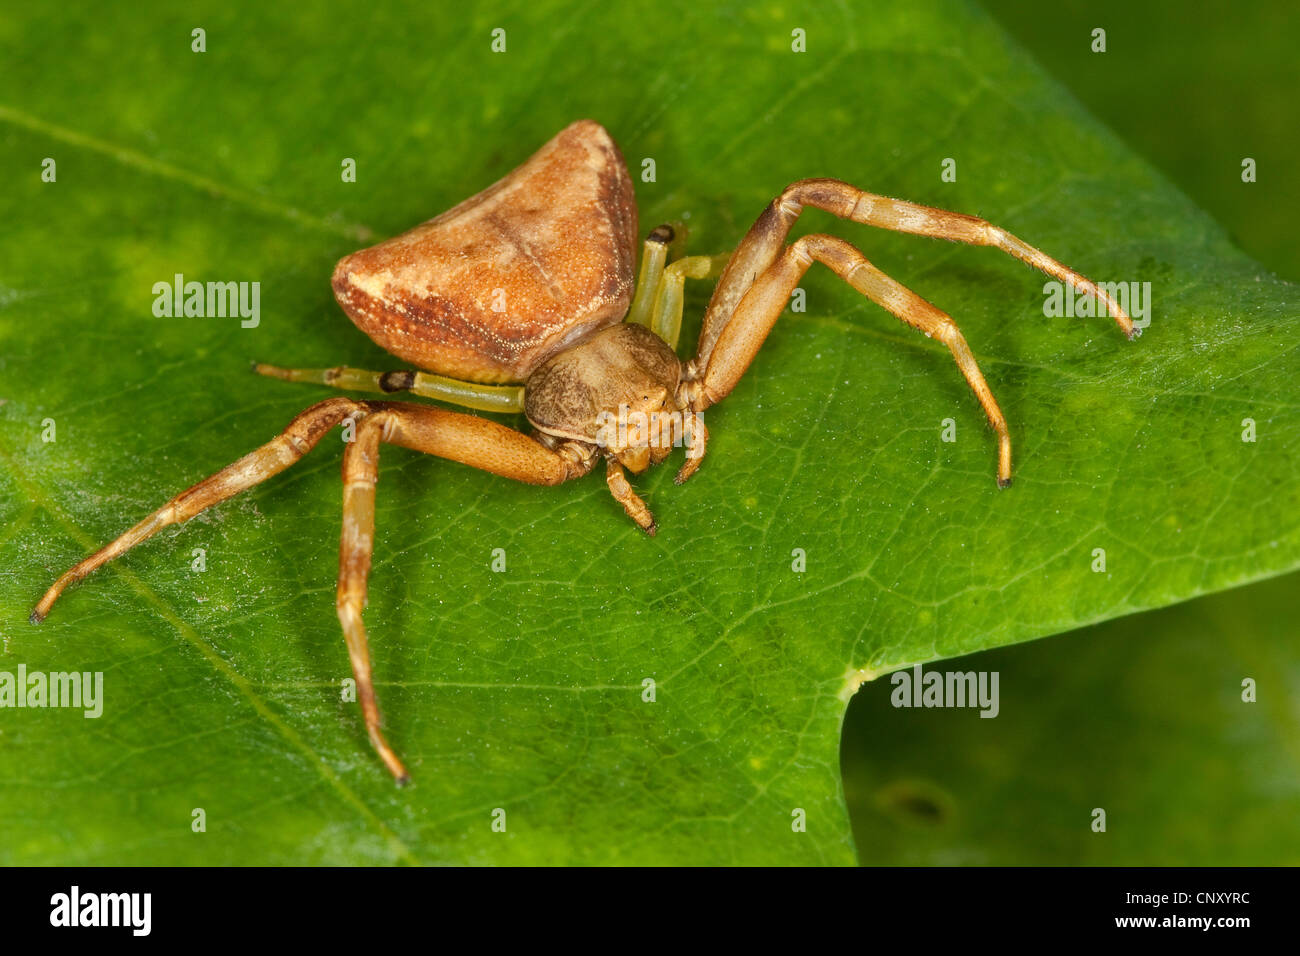 Araignée crabe (Pistius truncatus), Femme, Allemagne Banque D'Images